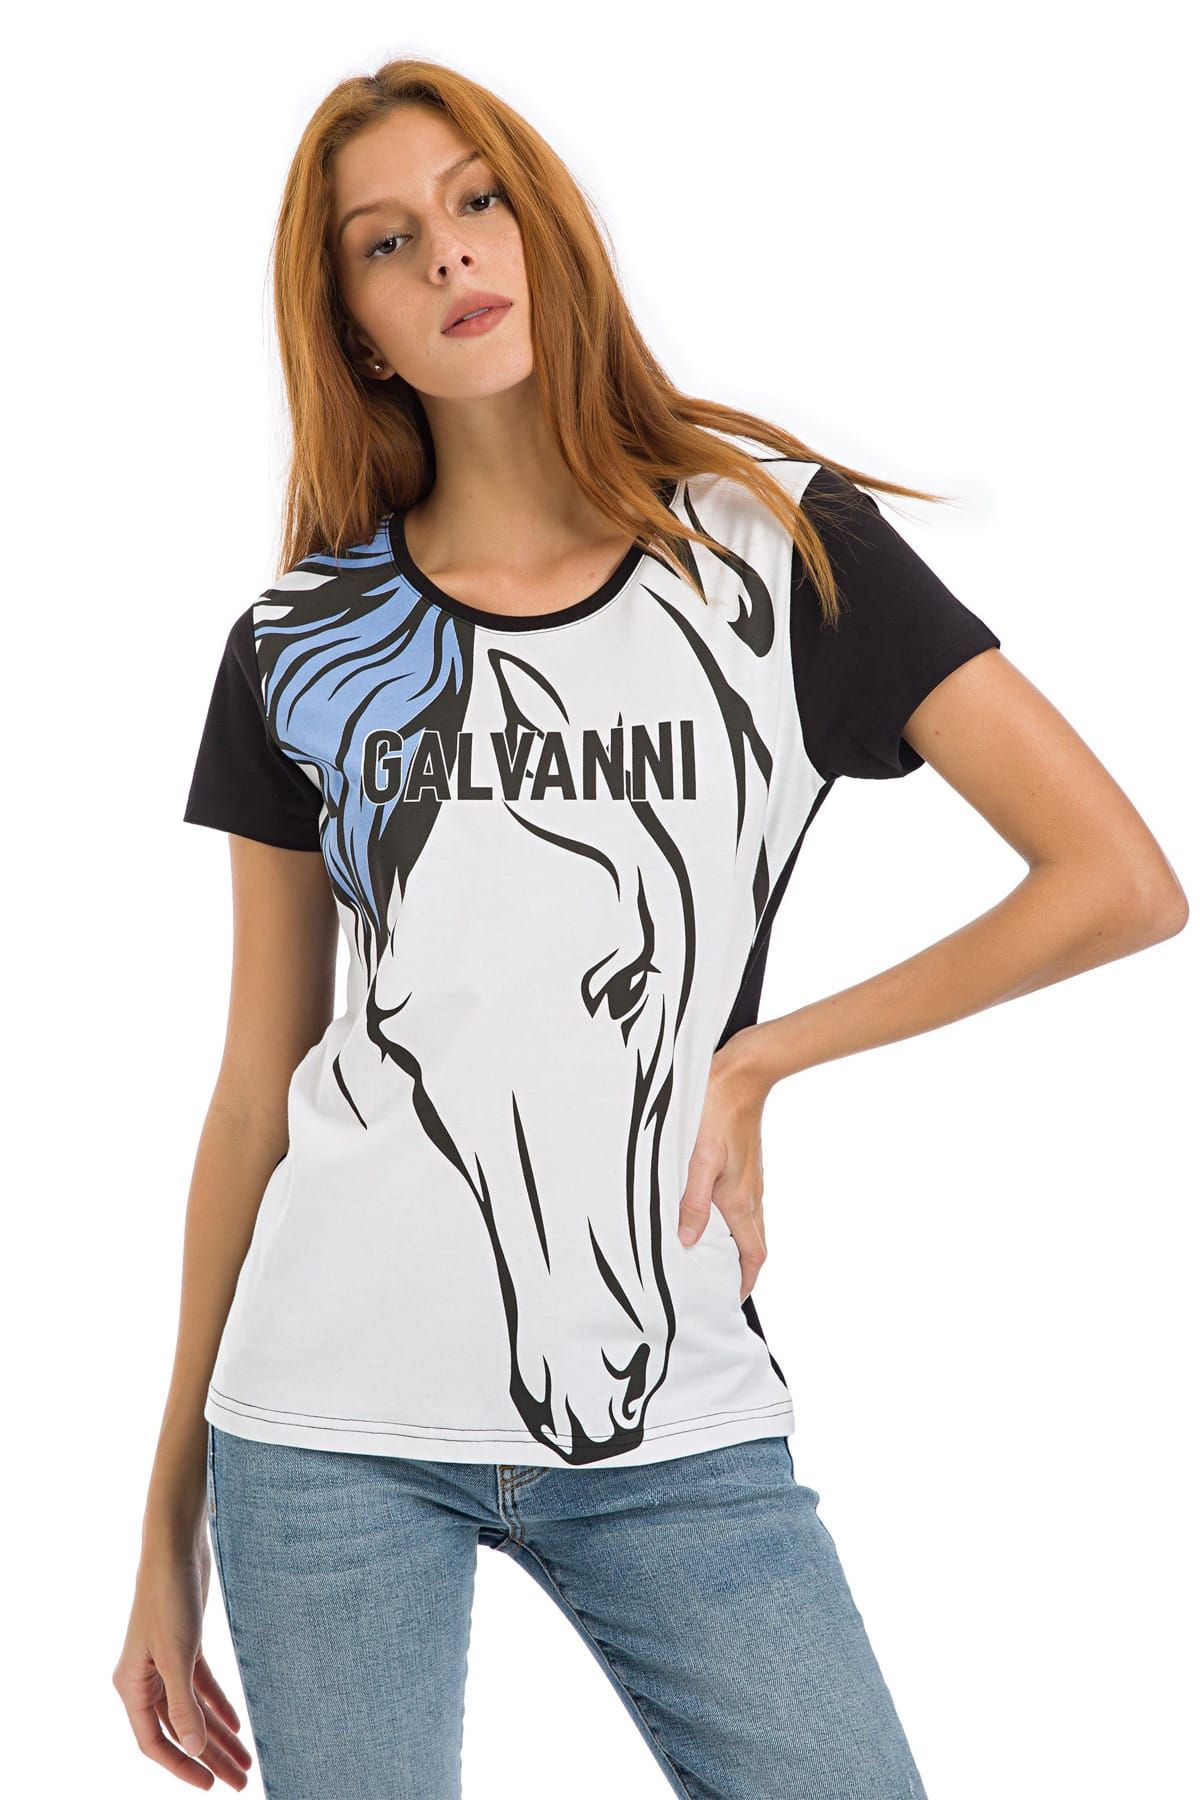 Galvanni Kadın Siyah T-Shirt - Glvsw11250201